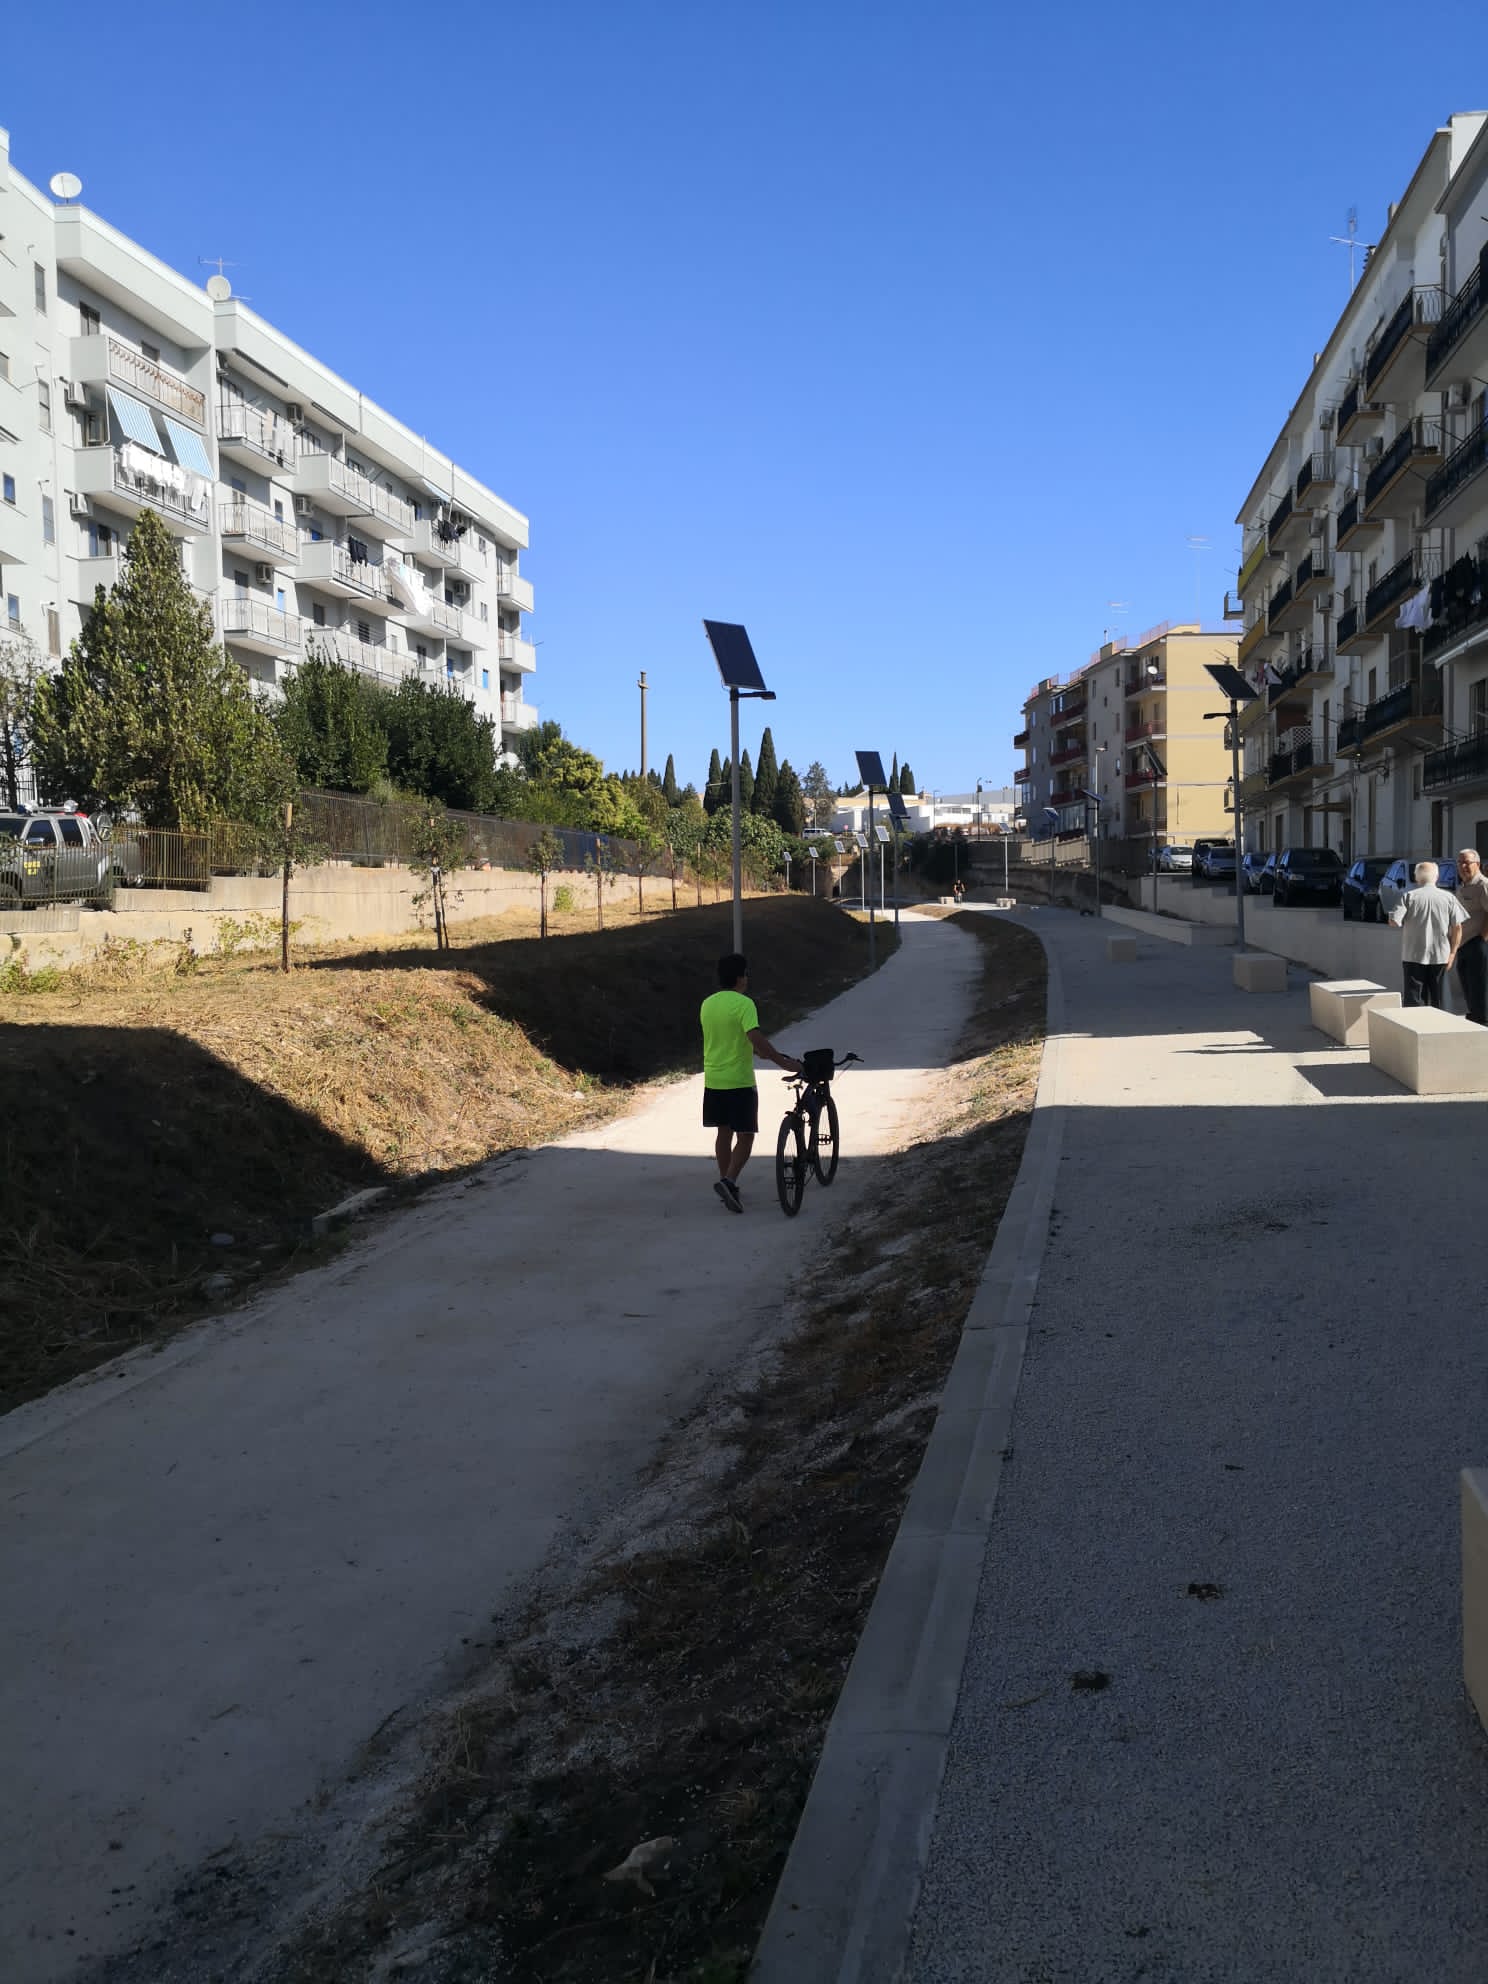 Galleria Nuova pista ciclabile a Castellaneta finanziata dalla Regione: un passo avanti per la promozione della mobilità lenta e sostenibile in Puglia - Diapositiva 4 di 4